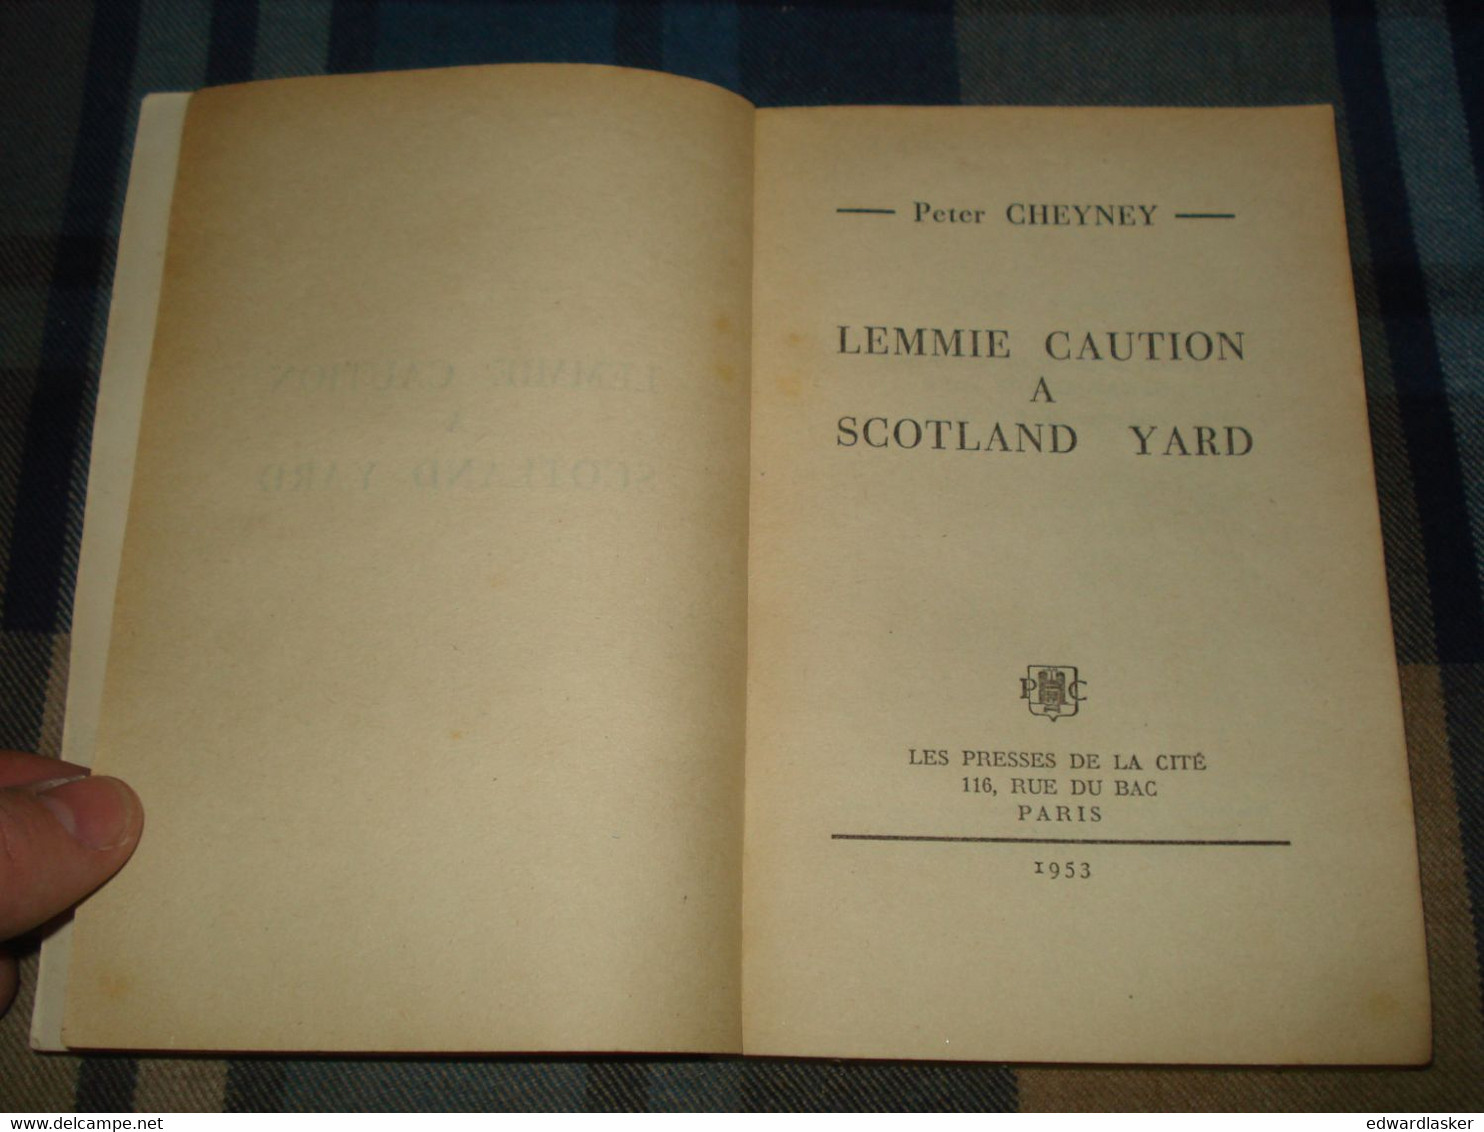 Un MYSTERE N°114 : LEMMIE CAUTION (à Scotland Yard) /Peter CHEYNEY - Février 1953 - Presses De La Cité